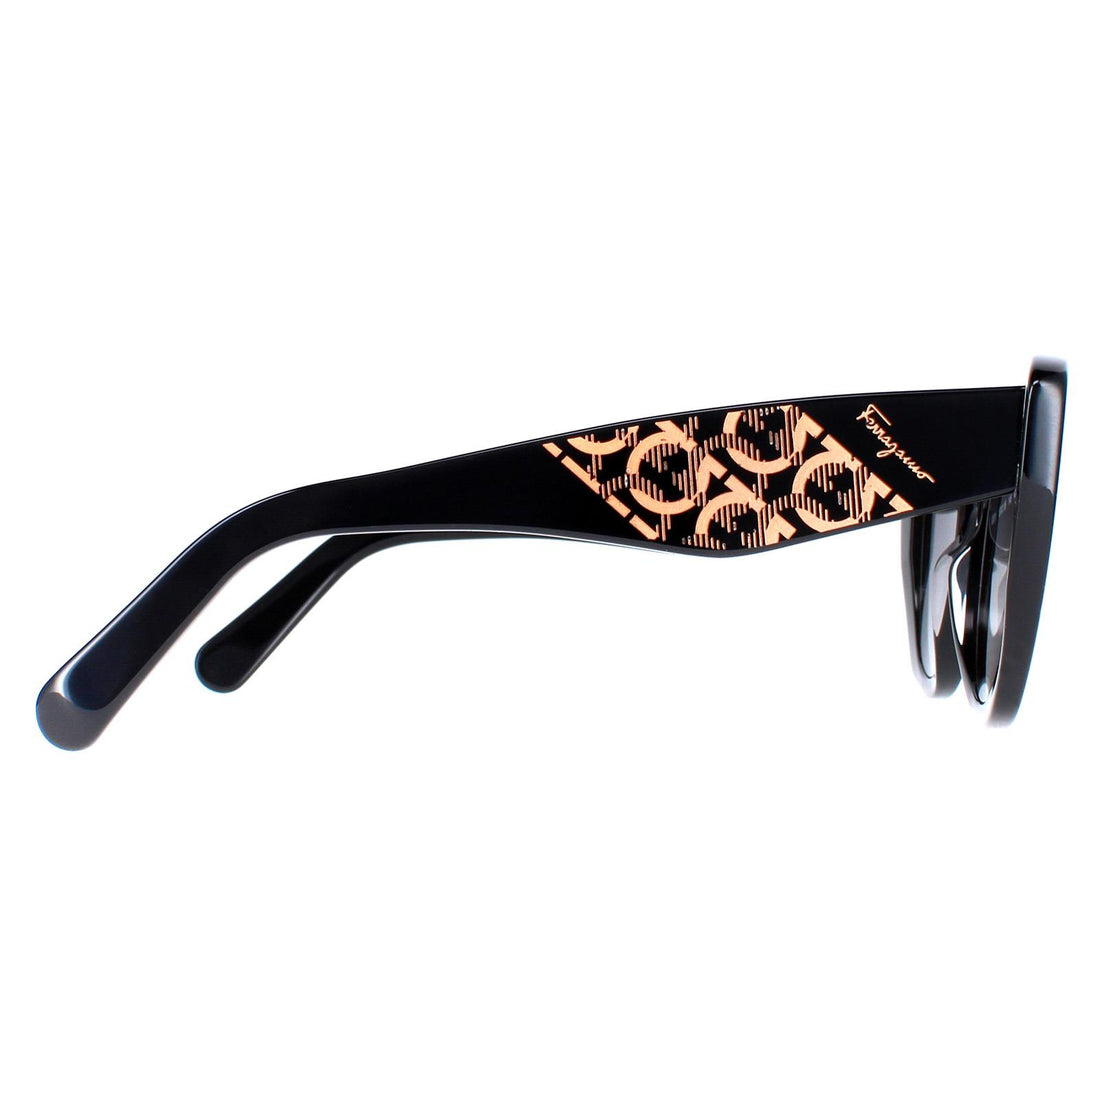 Salvatore Ferragamo Sunglasses SF1022S 001 Black Grey Gradient